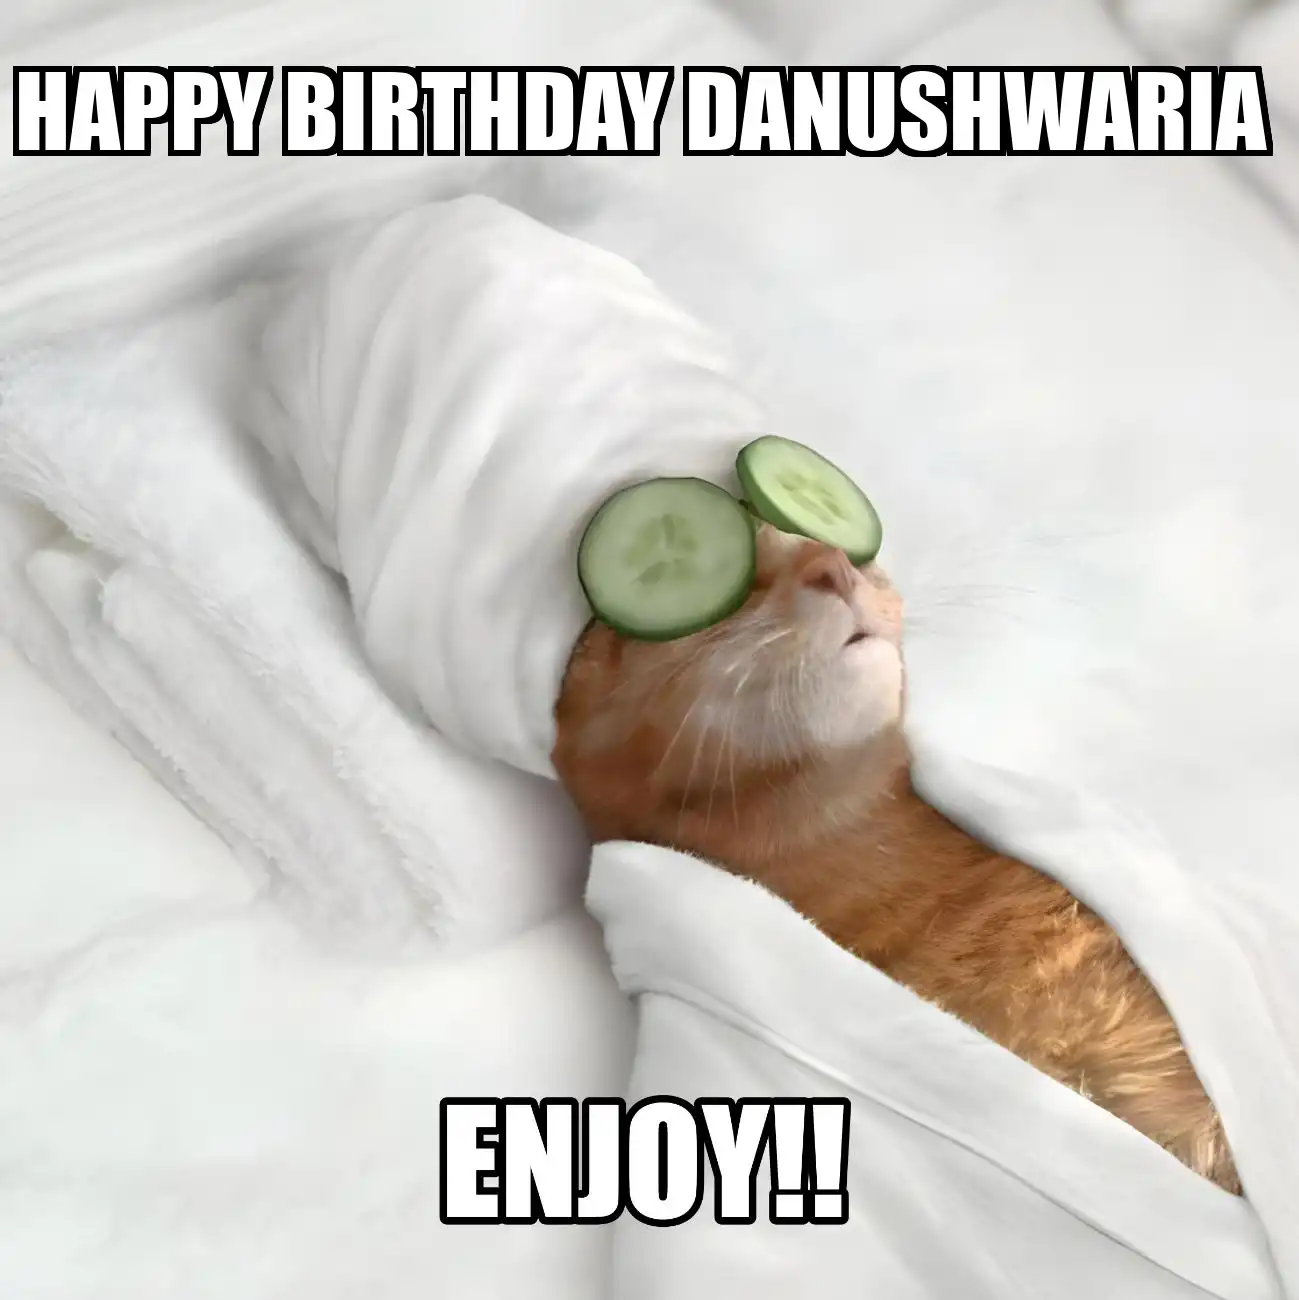 Happy Birthday Danushwaria Enjoy Cat Meme